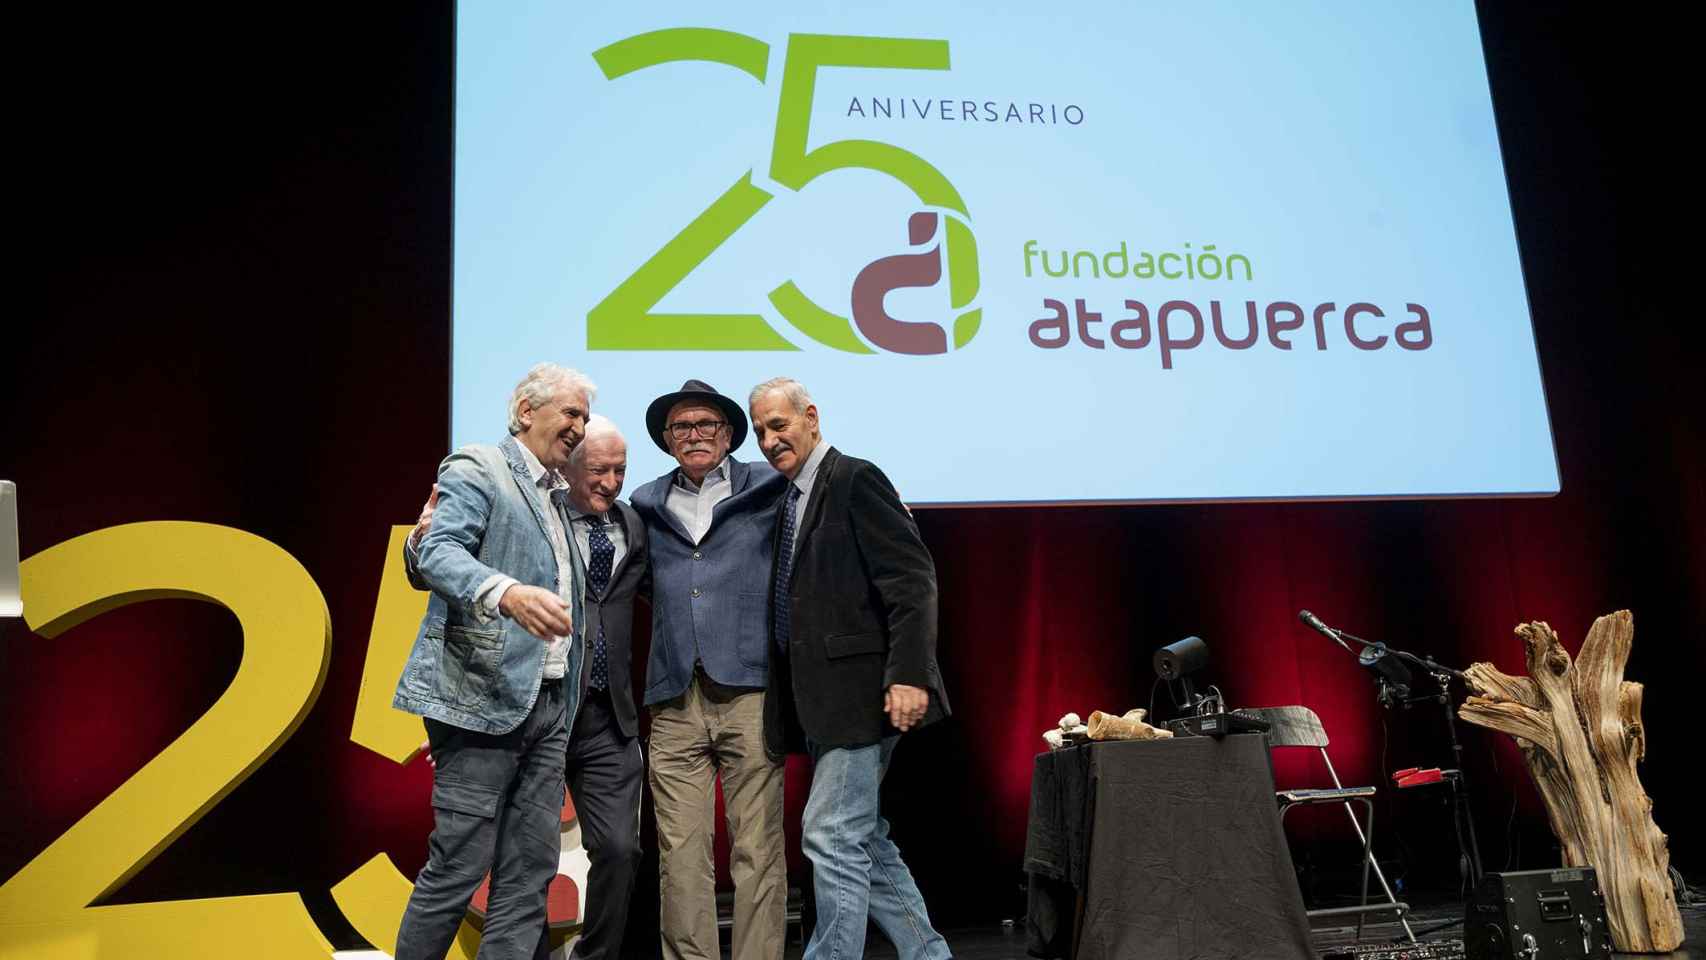 Gala para presentar las actividades del 25º aniversario de la Fundación Atapuerca